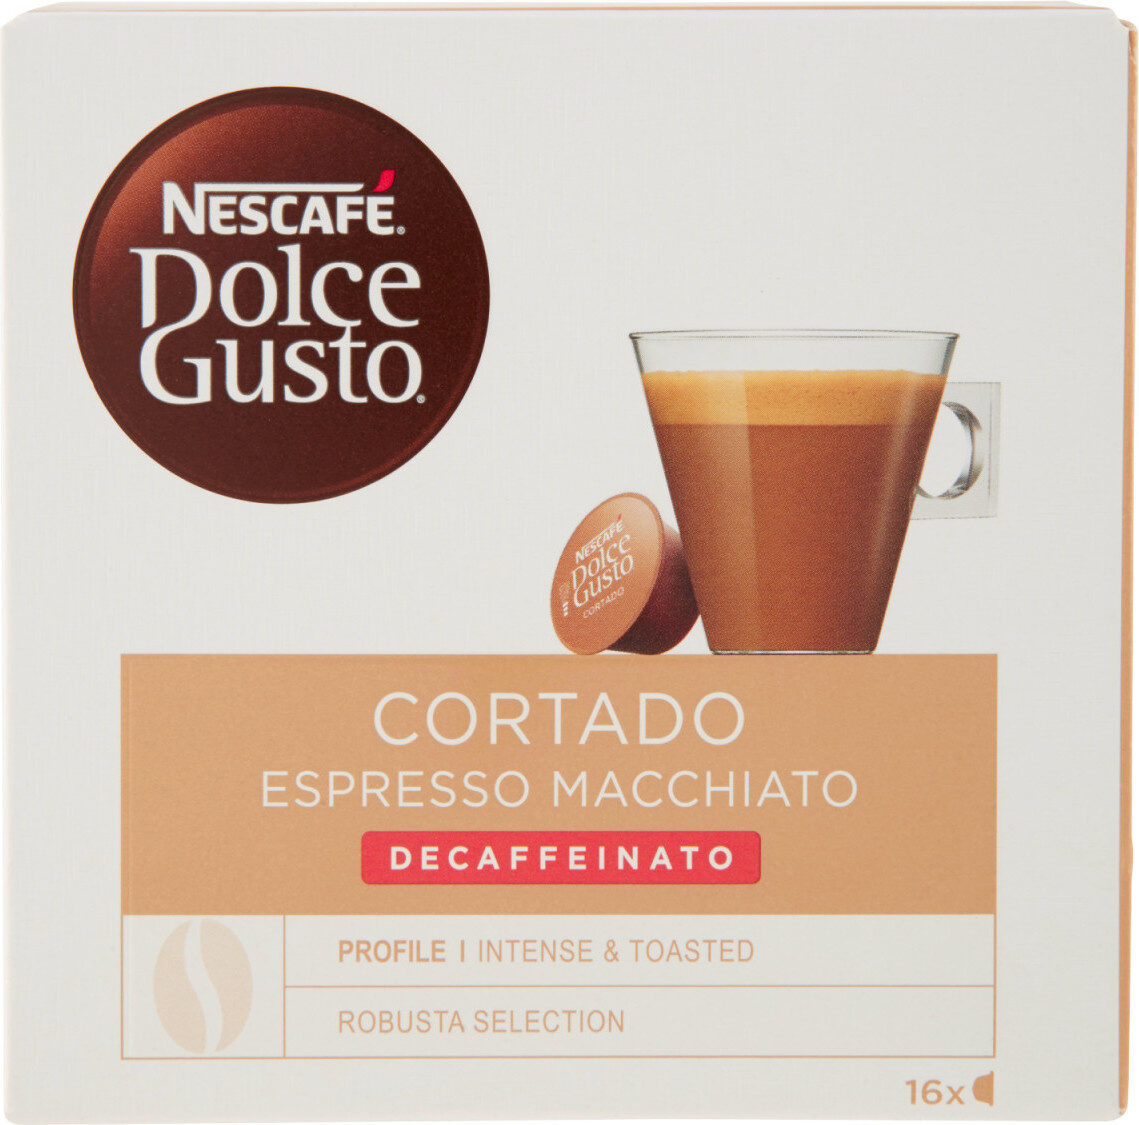 Cortado espresso macchiato decaffeinato caffè - Prodotto - fr